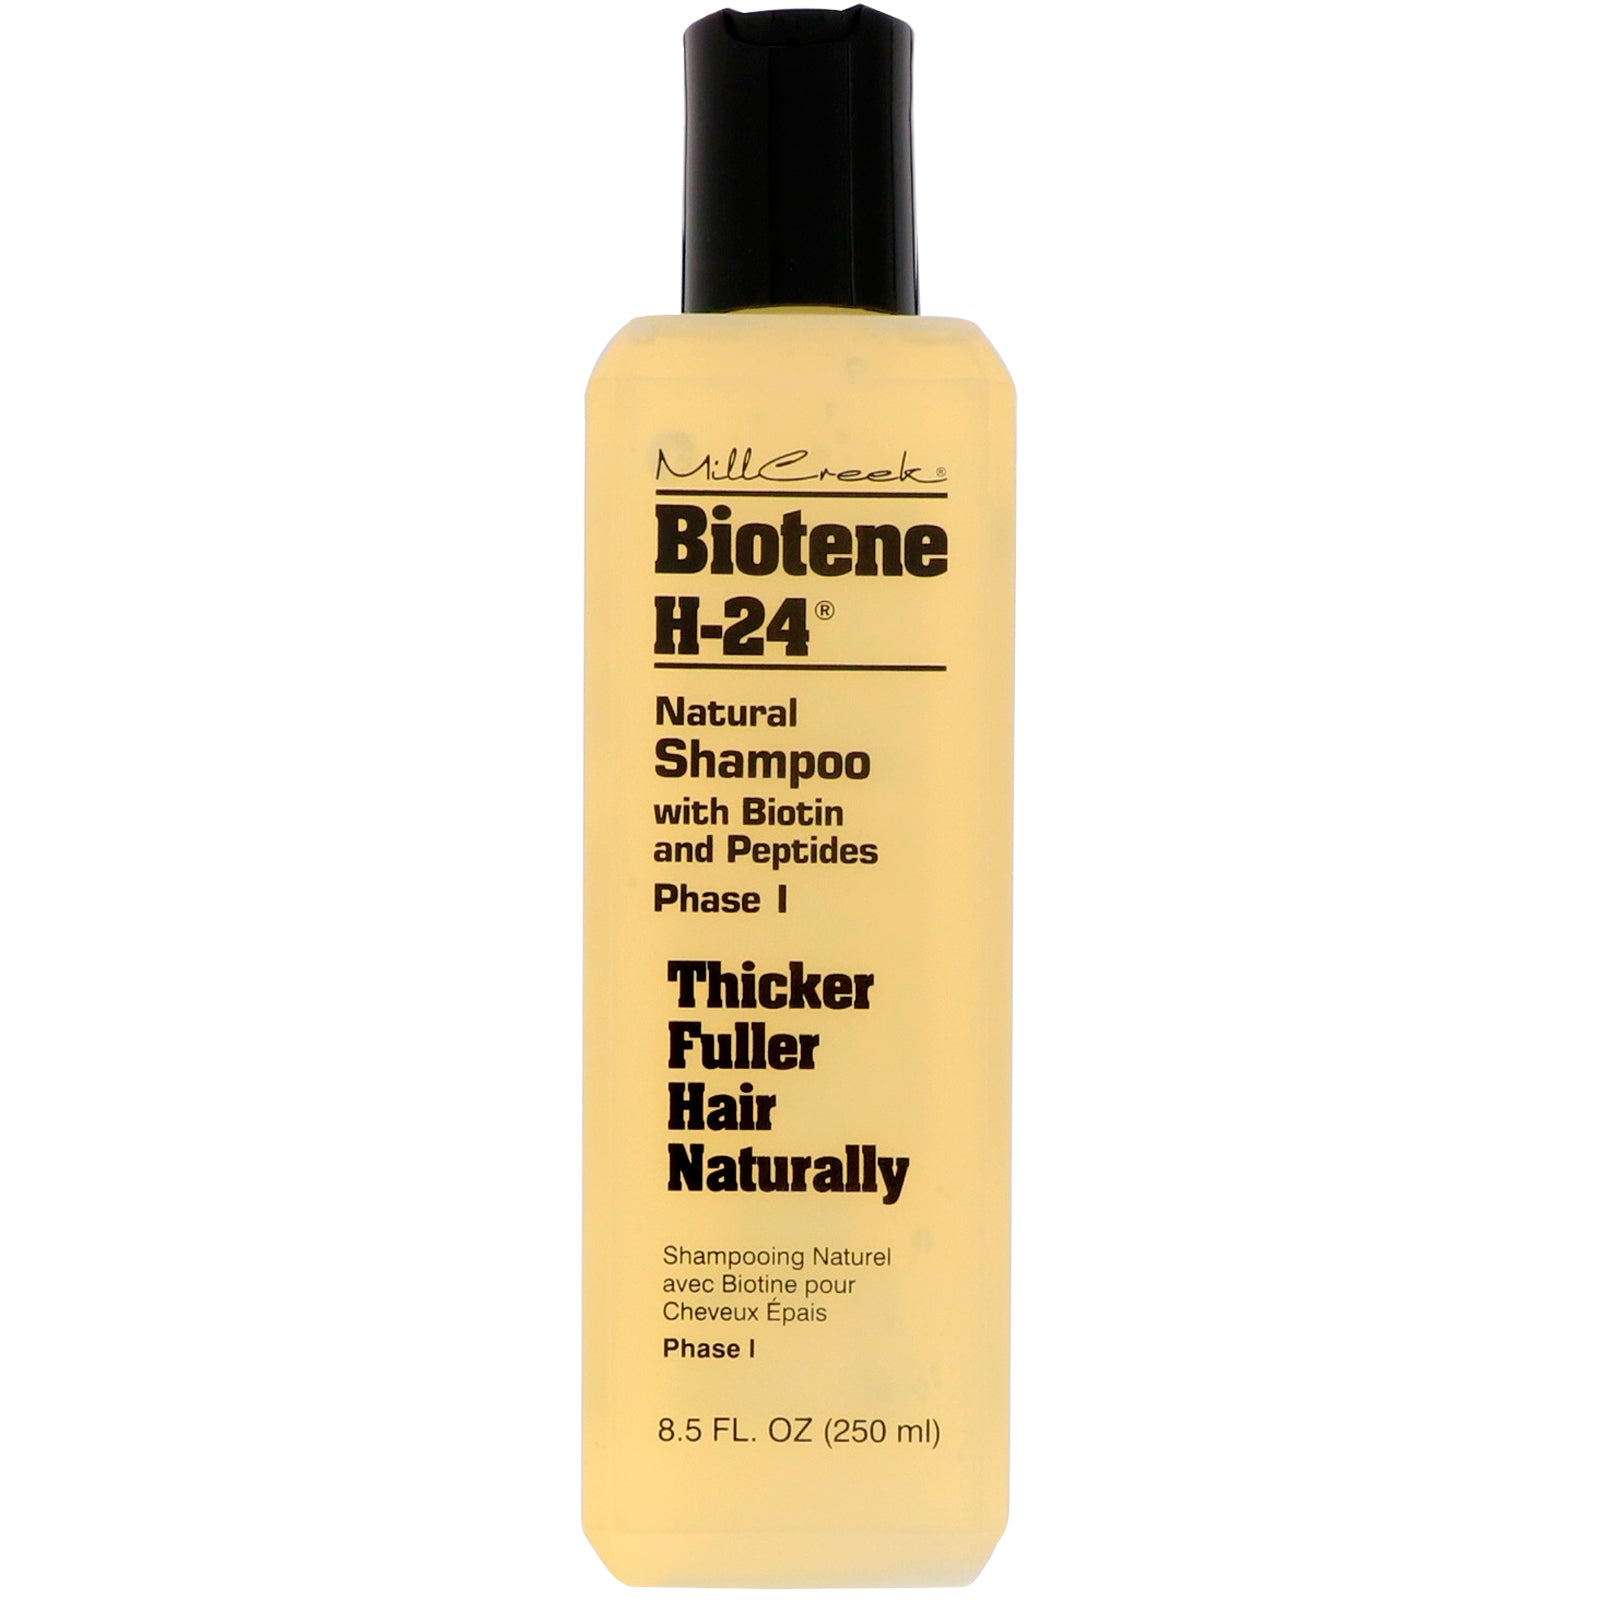 Biotene H-24, Natural Shampoo with Biotin and Peptides, Phase I, 8.5 fl oz (250 ml)